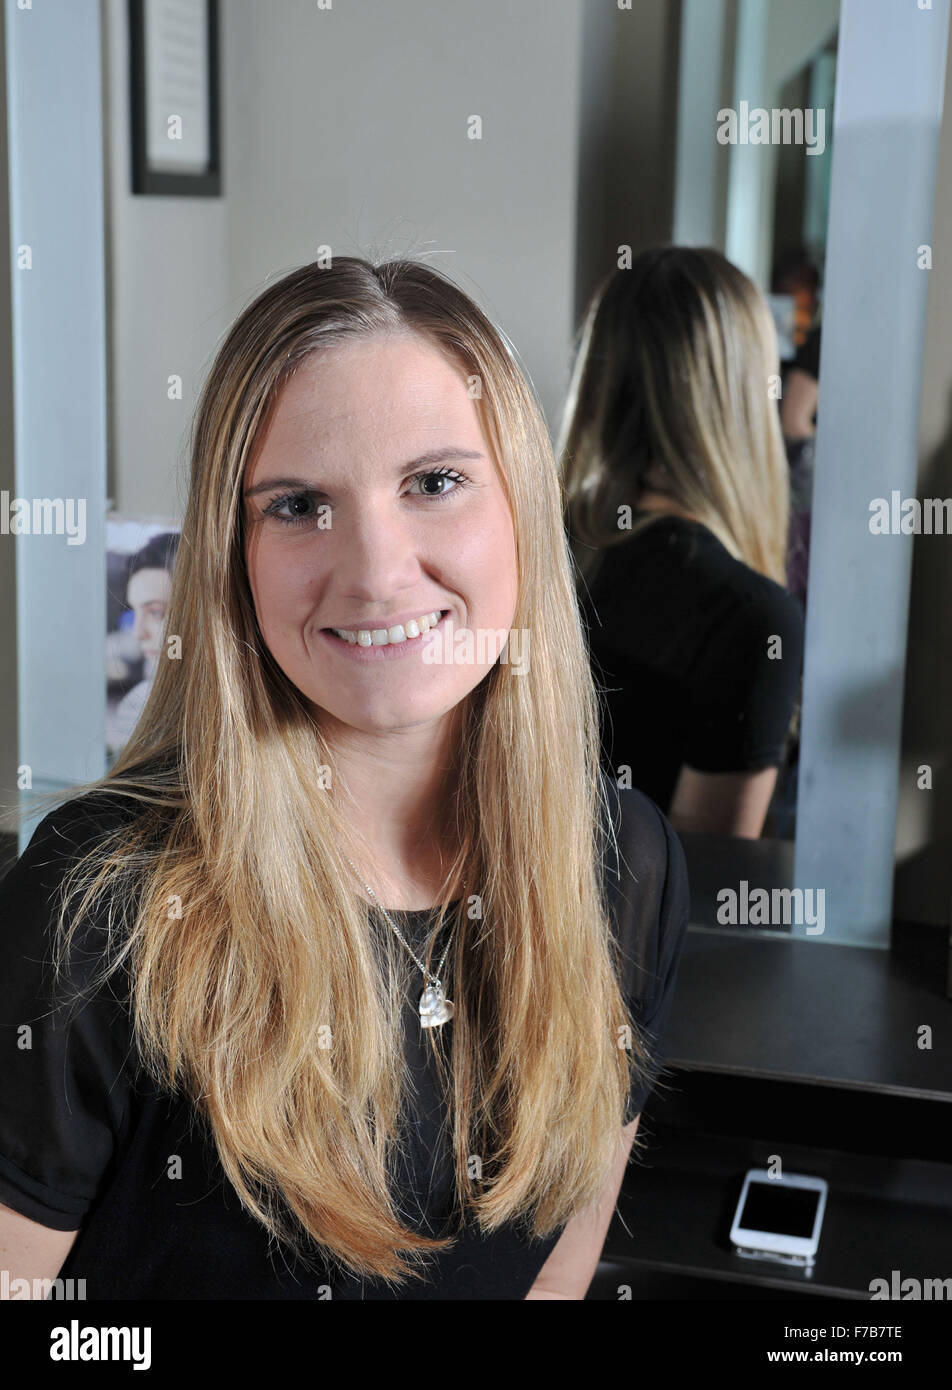 Junge Frau mit langen blonden Haaren, die es für wohltätige Zwecke in einem Friseursalon in Großbritannien abschneiden wird Stockfoto